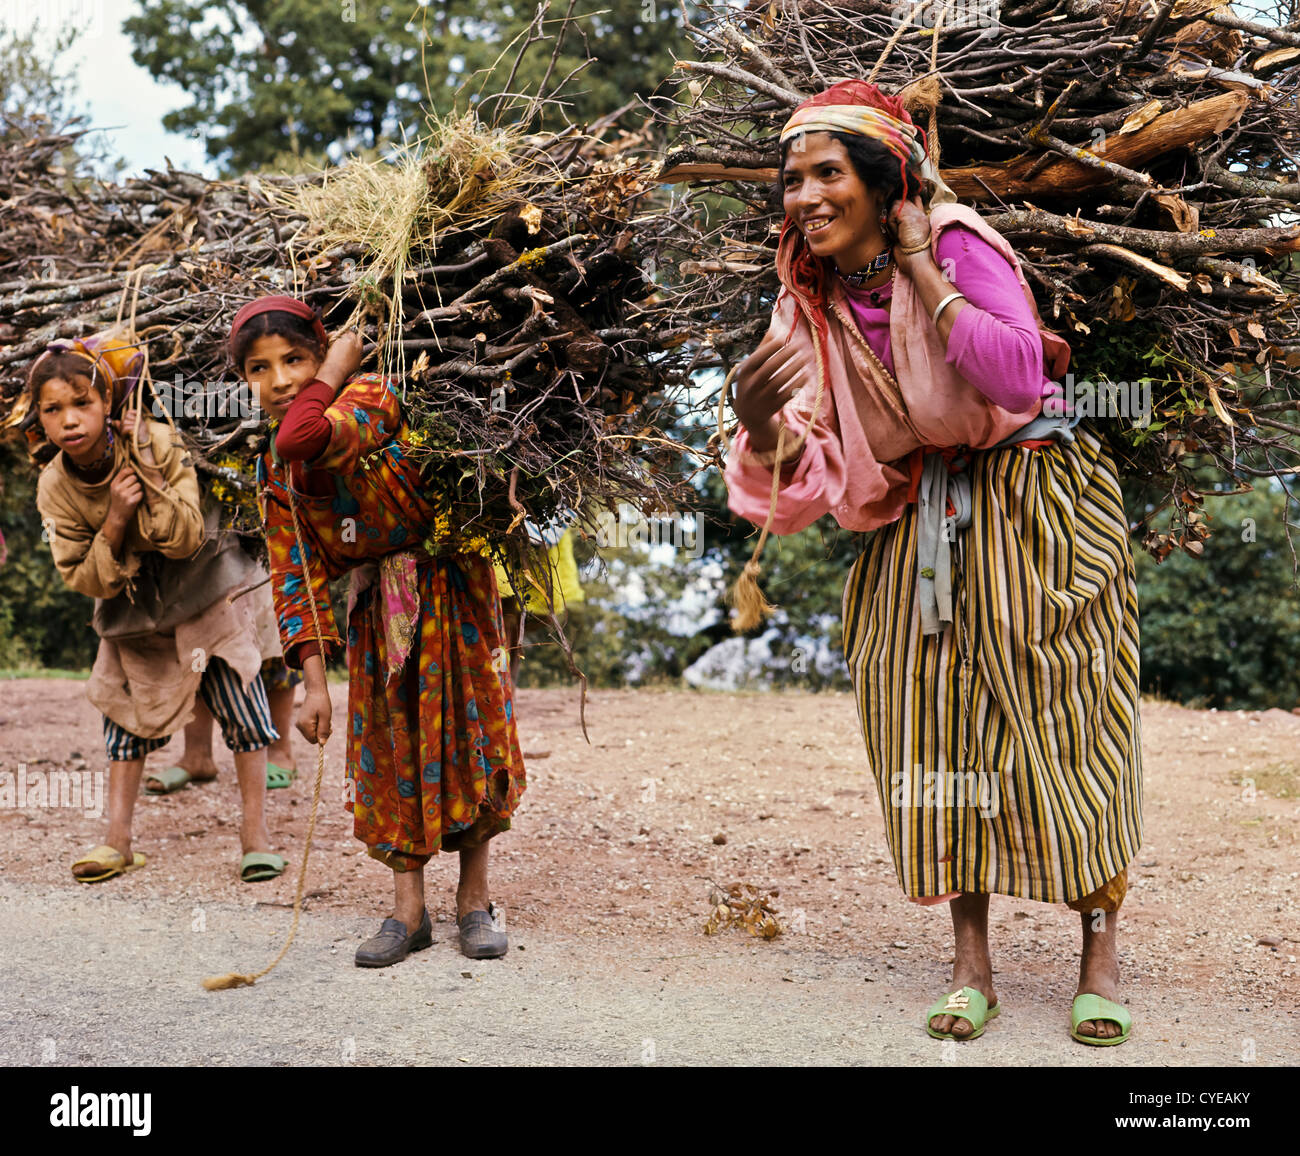 8393. Femme et filles avec le bois, Haut Atlas, Maroc Banque D'Images